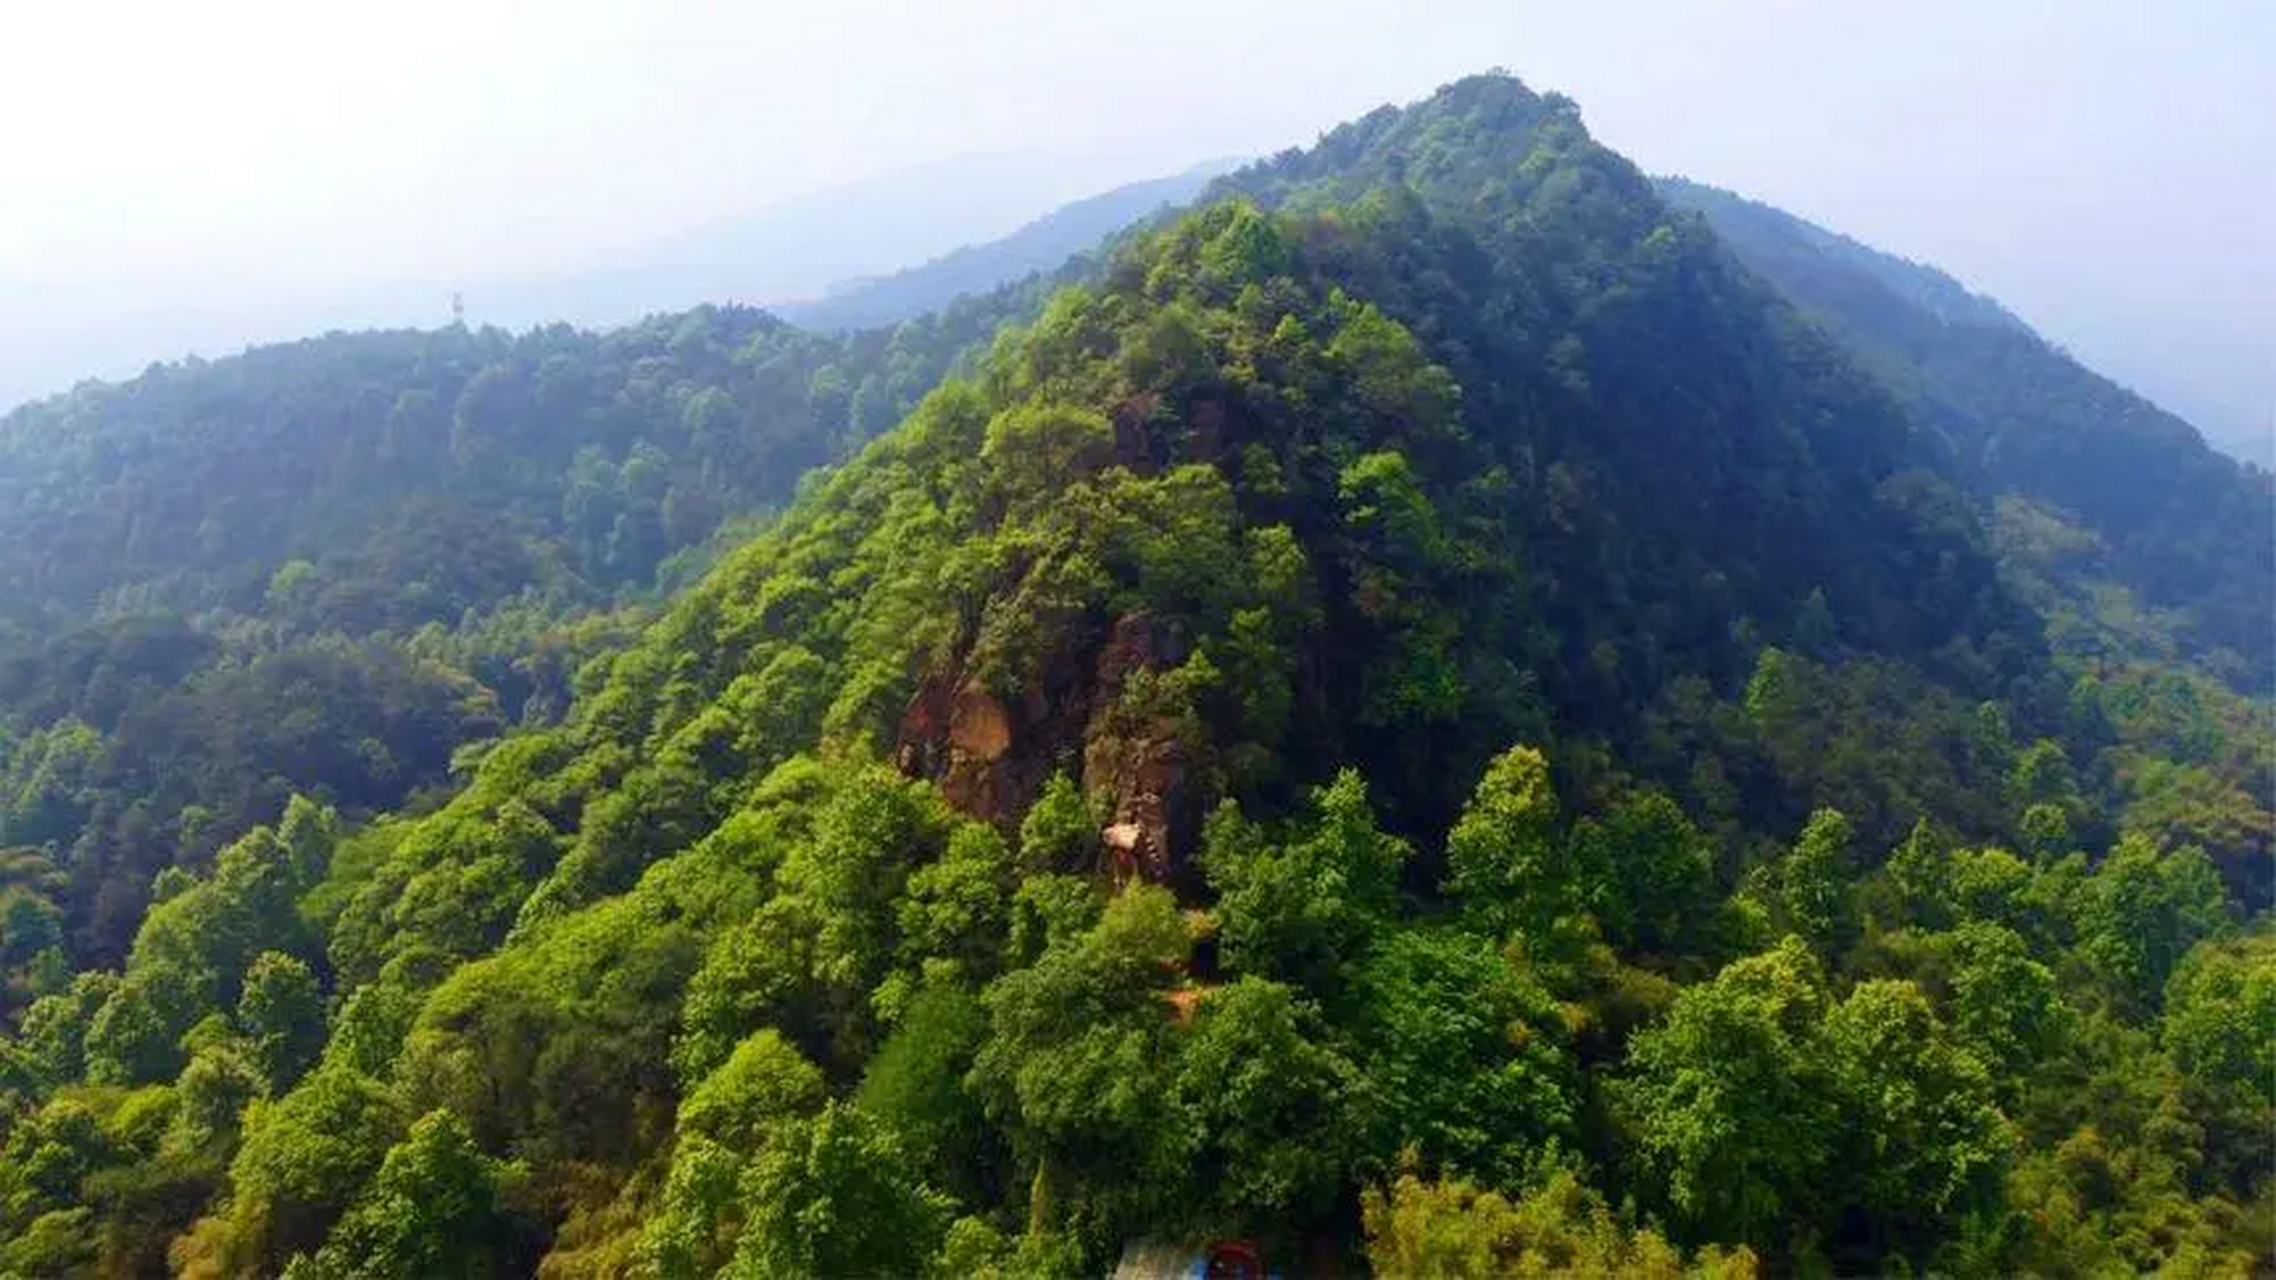 重庆虎峰山,素有重庆小九寨的美誉,是重庆莲花湖旅游度假区的重要